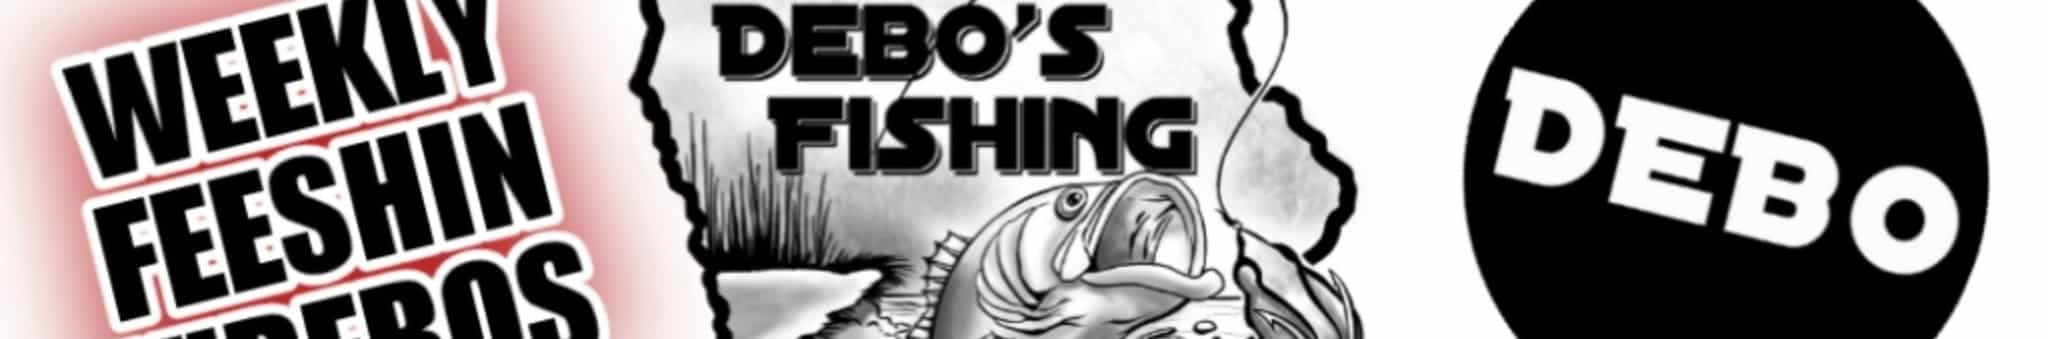 DEBO'S Fishing